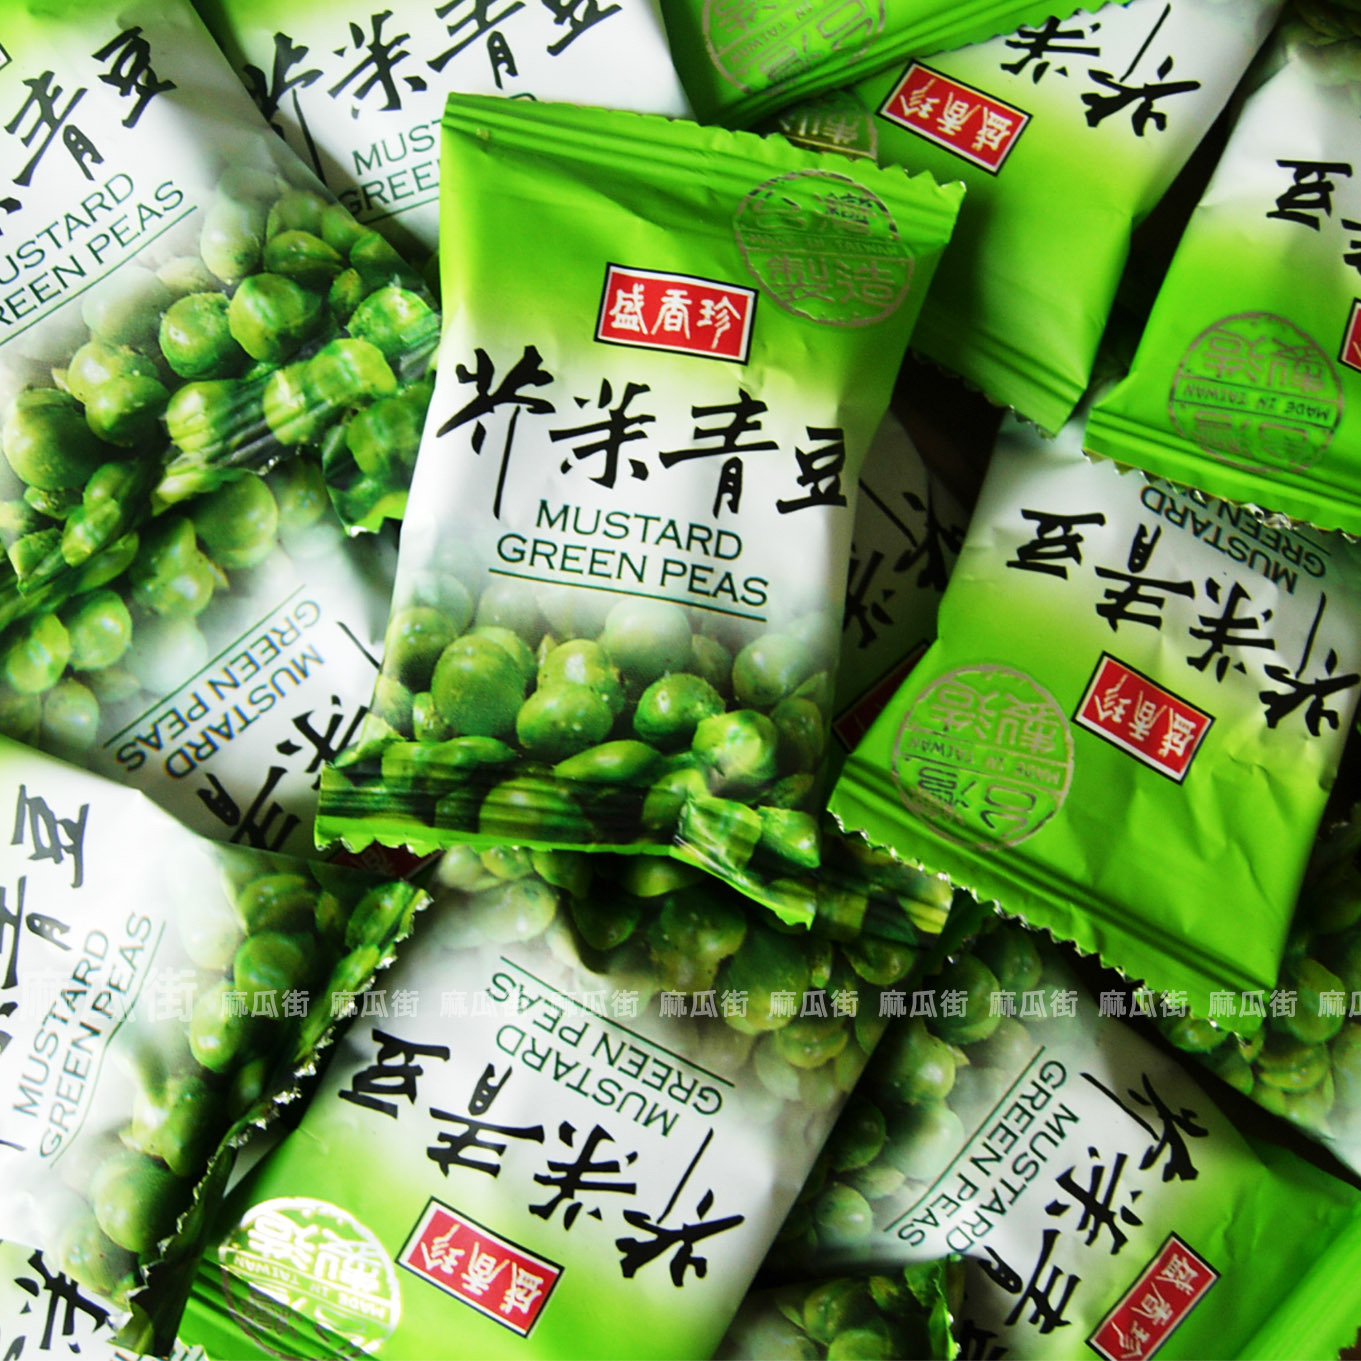 【正品授权】台湾进口 盛香珍芥末青豆 散装 250g 绝对正品！！